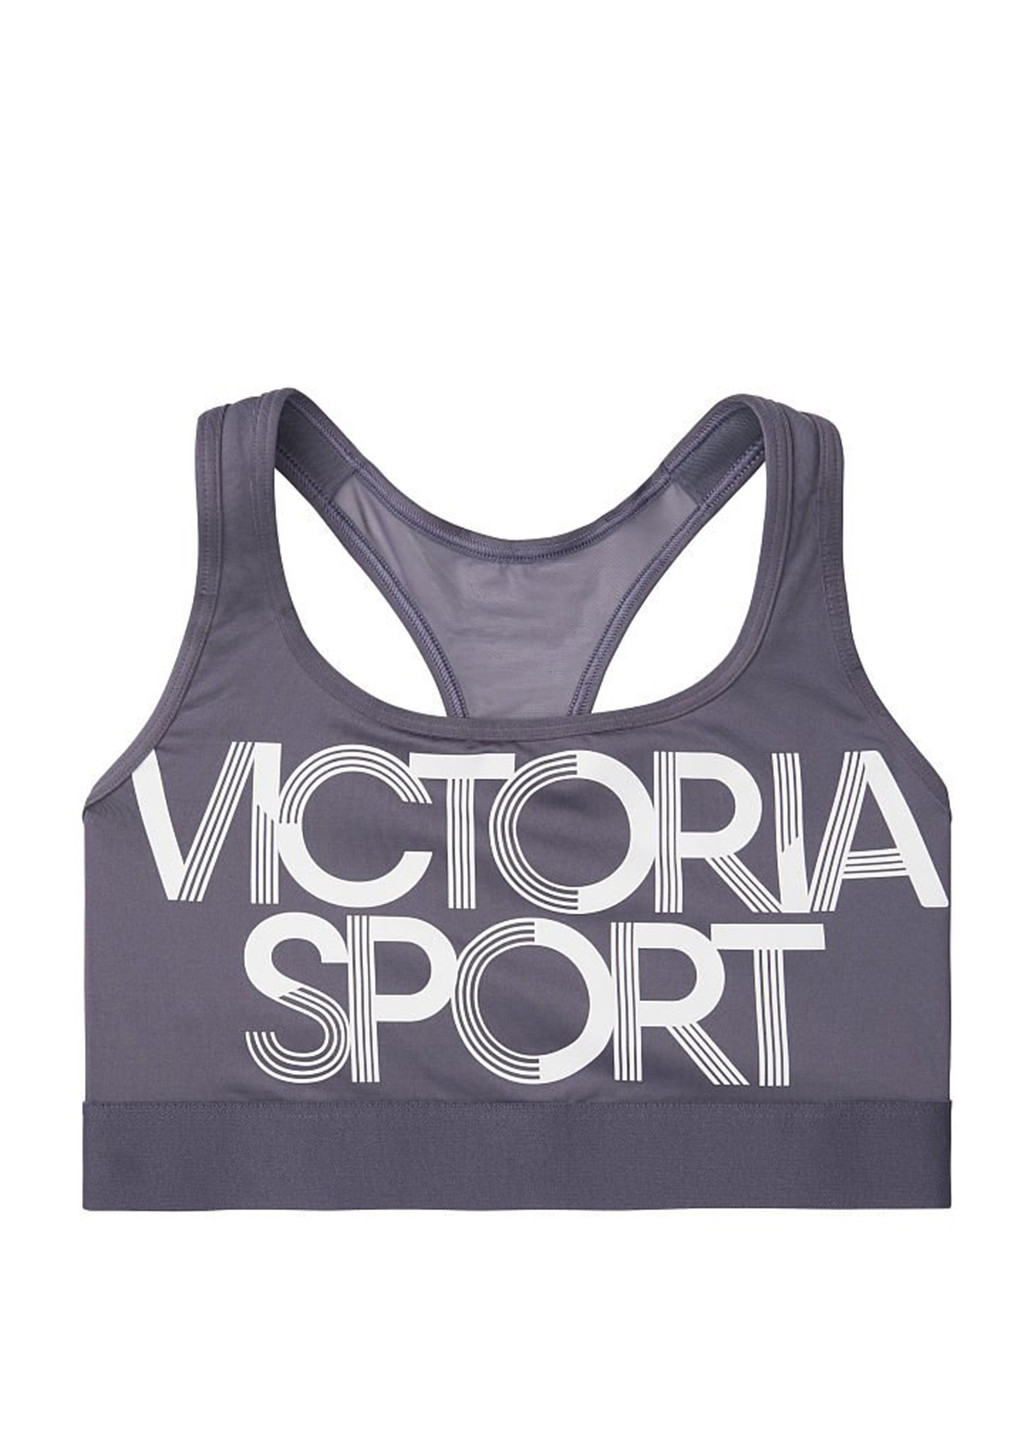 Топ Victoria's Secret надпись серый спортивный полиэстер